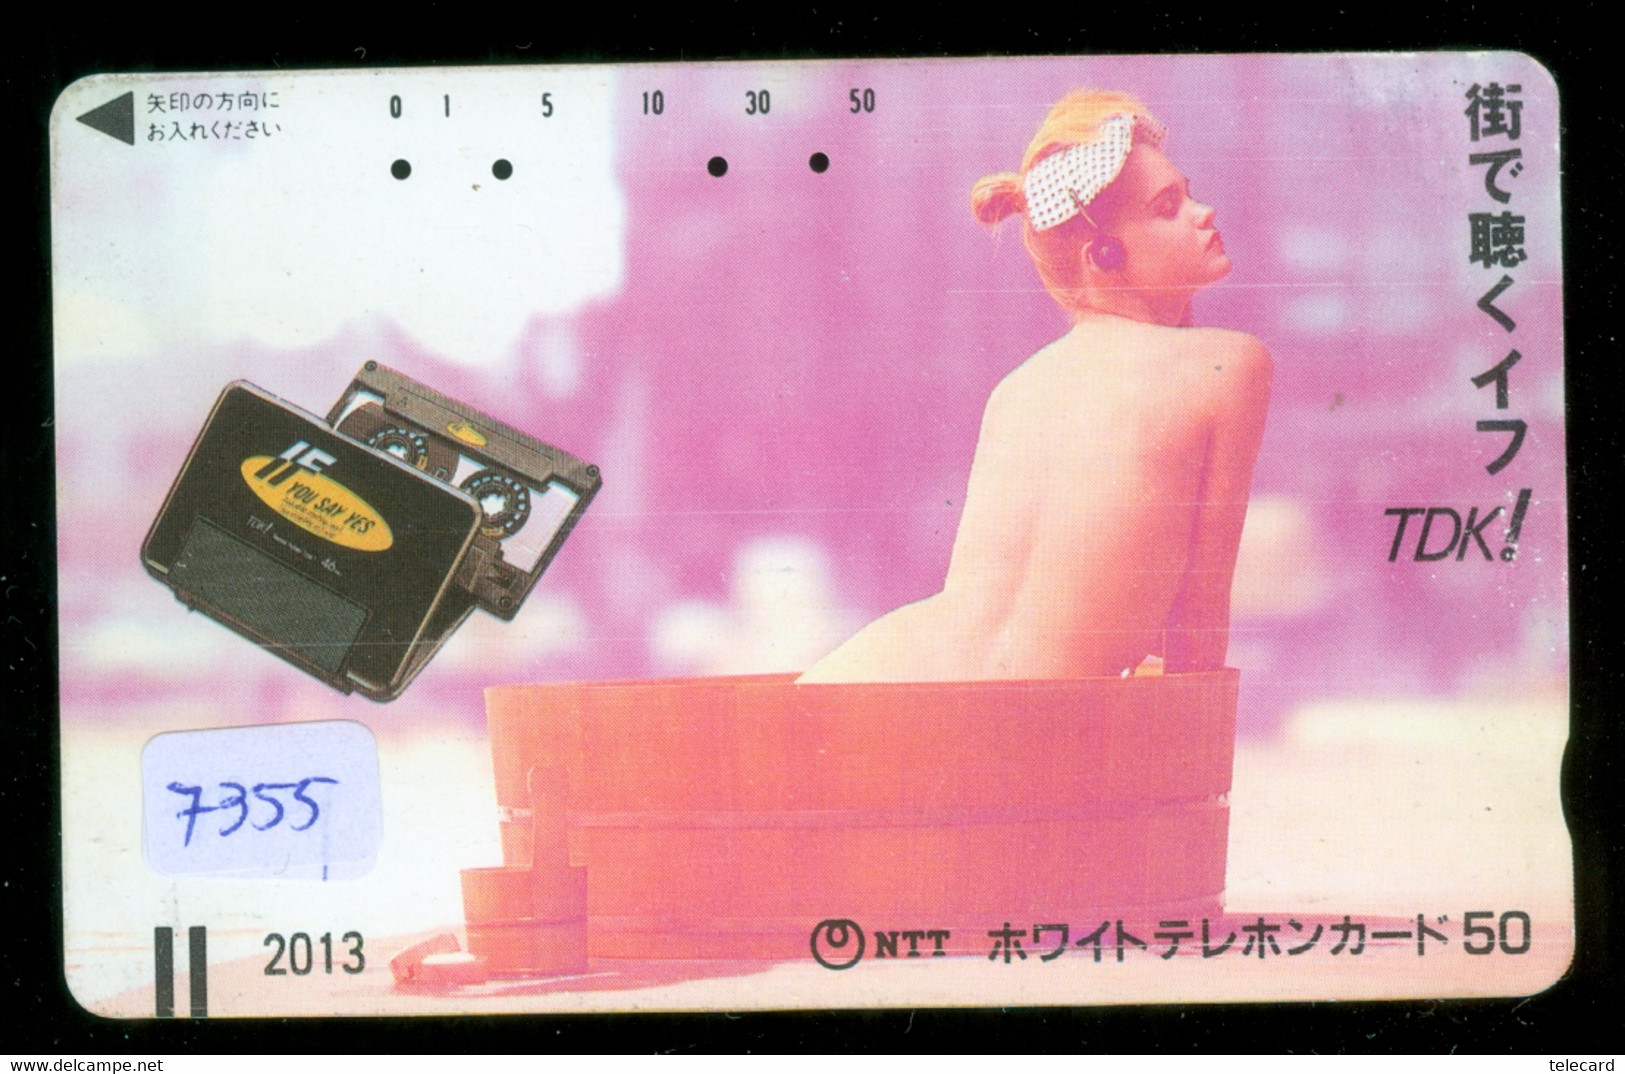 Télécarte Japon FRONT BAR 110-011 * FEMME EROTIQUE (7355) BATH * PHONECARD JAPAN * TELEFONKARTE *  BATHCLOTHES LINGERIE - Mode